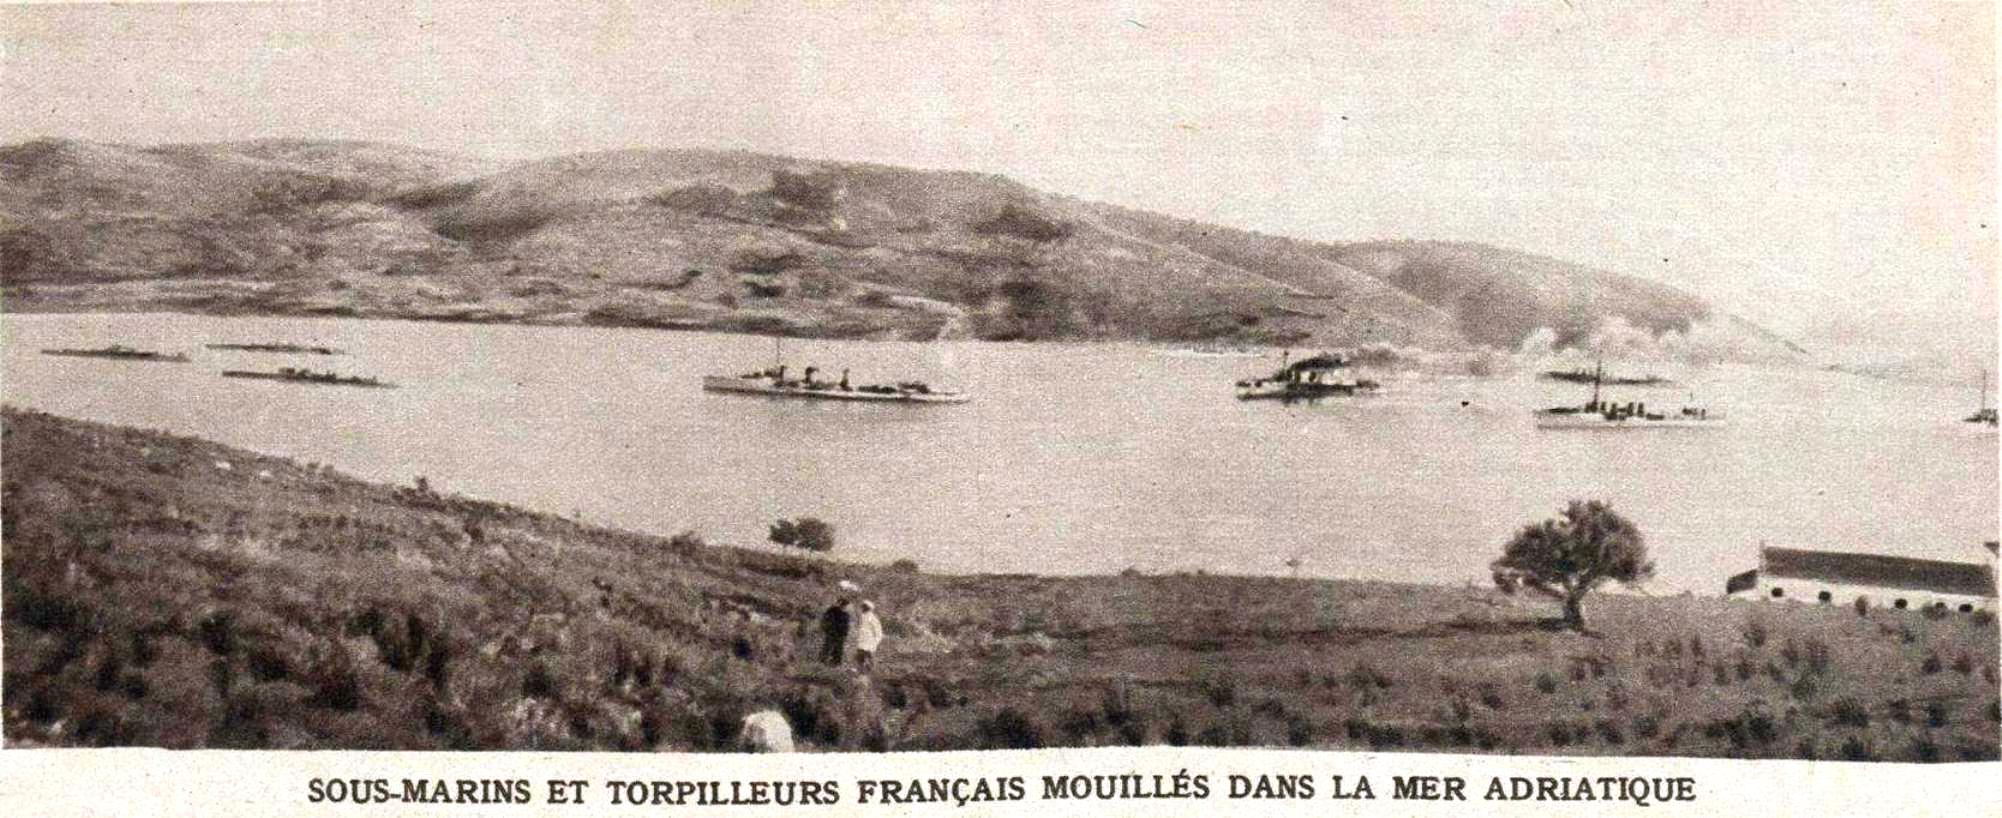 Francia rombolók és tengeralattjárók egy adriai öbölben.